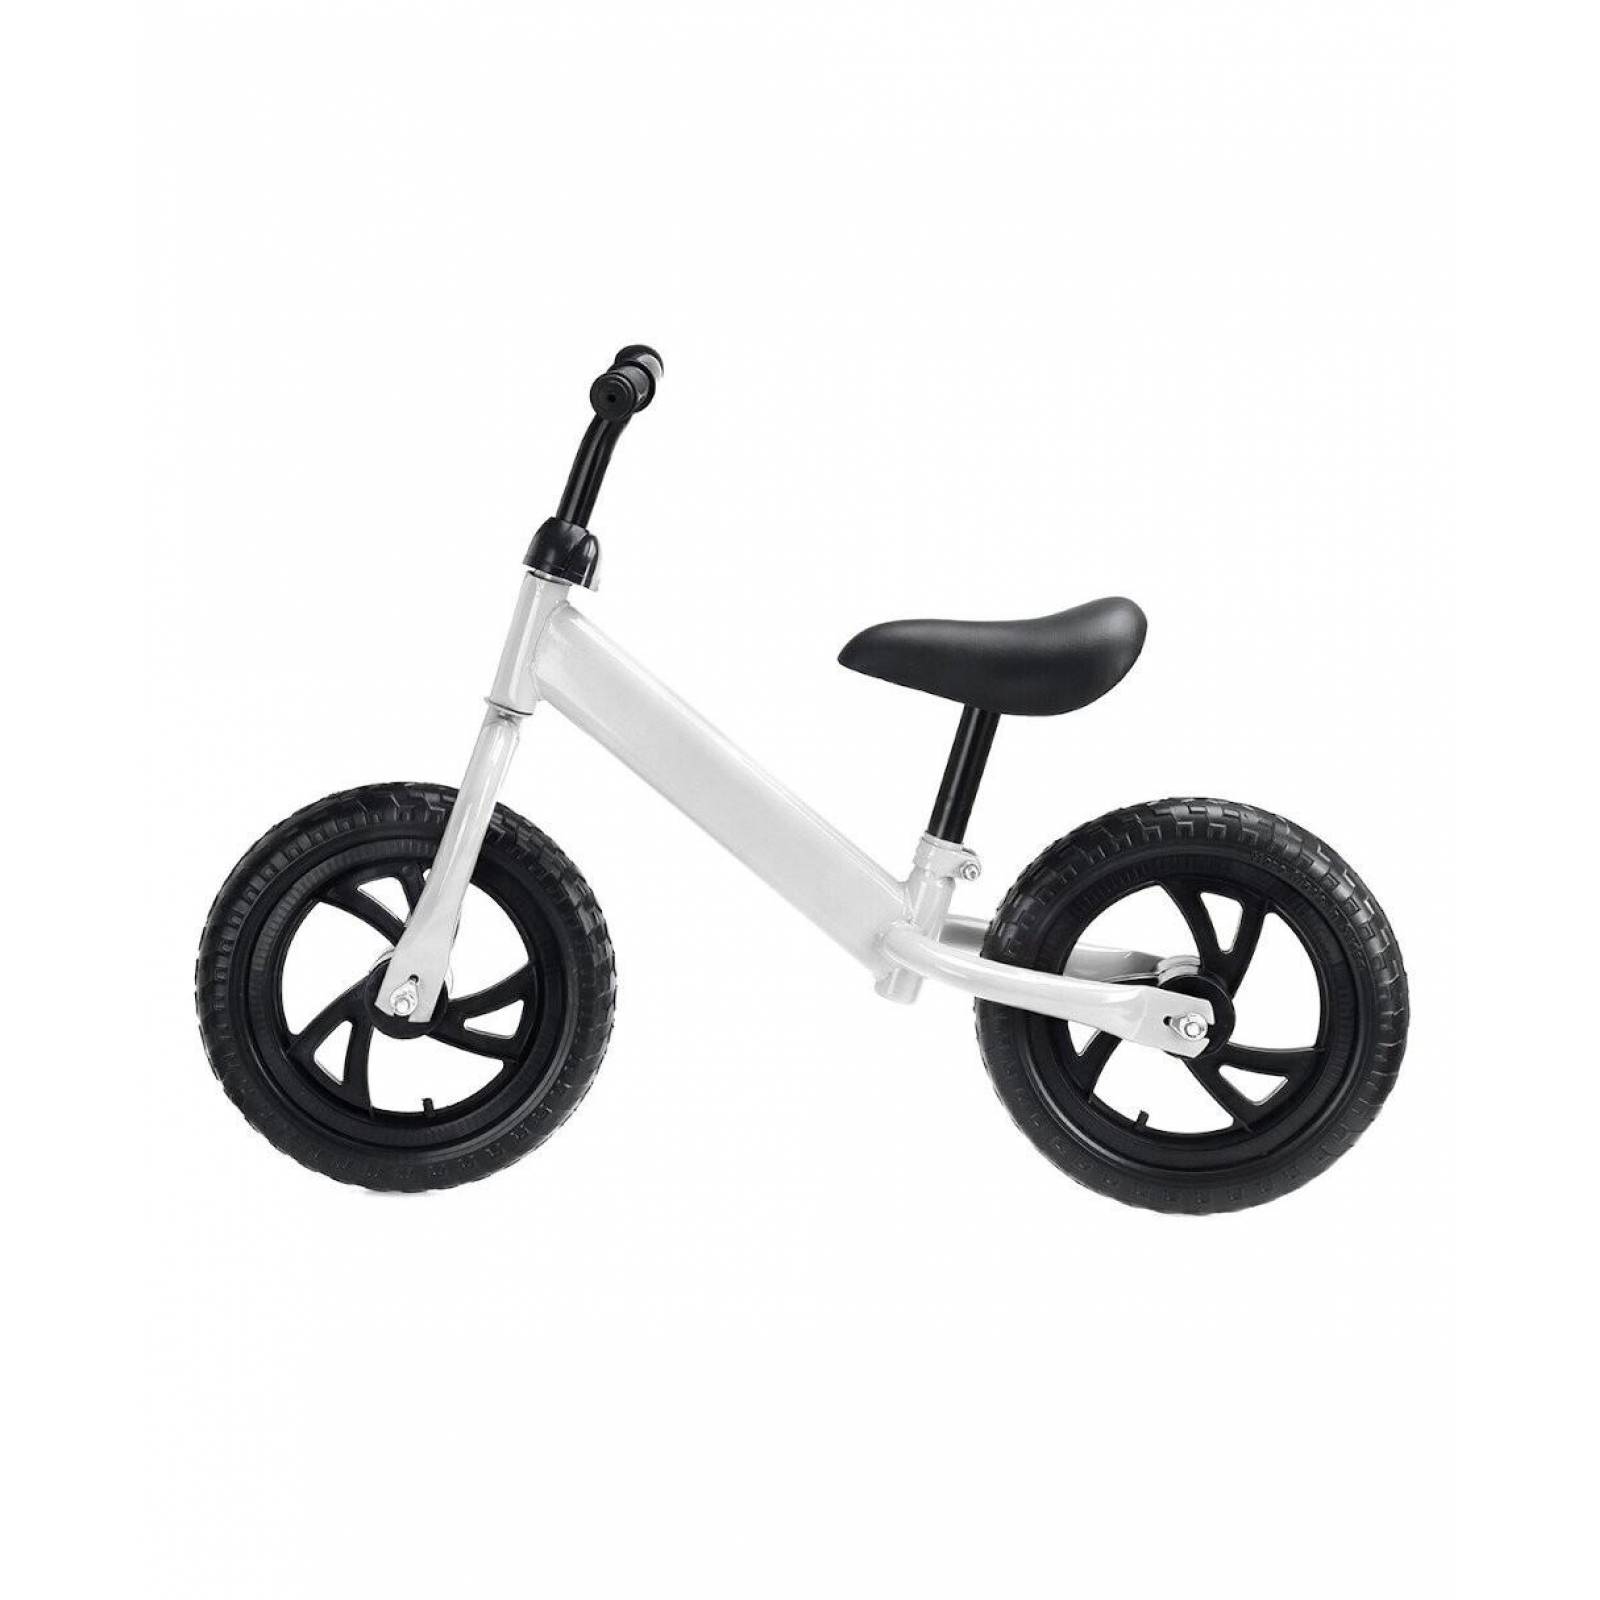 Bicicleta Infantil de Balance Equilibrio de 10p Sin Pedales  - Blanco